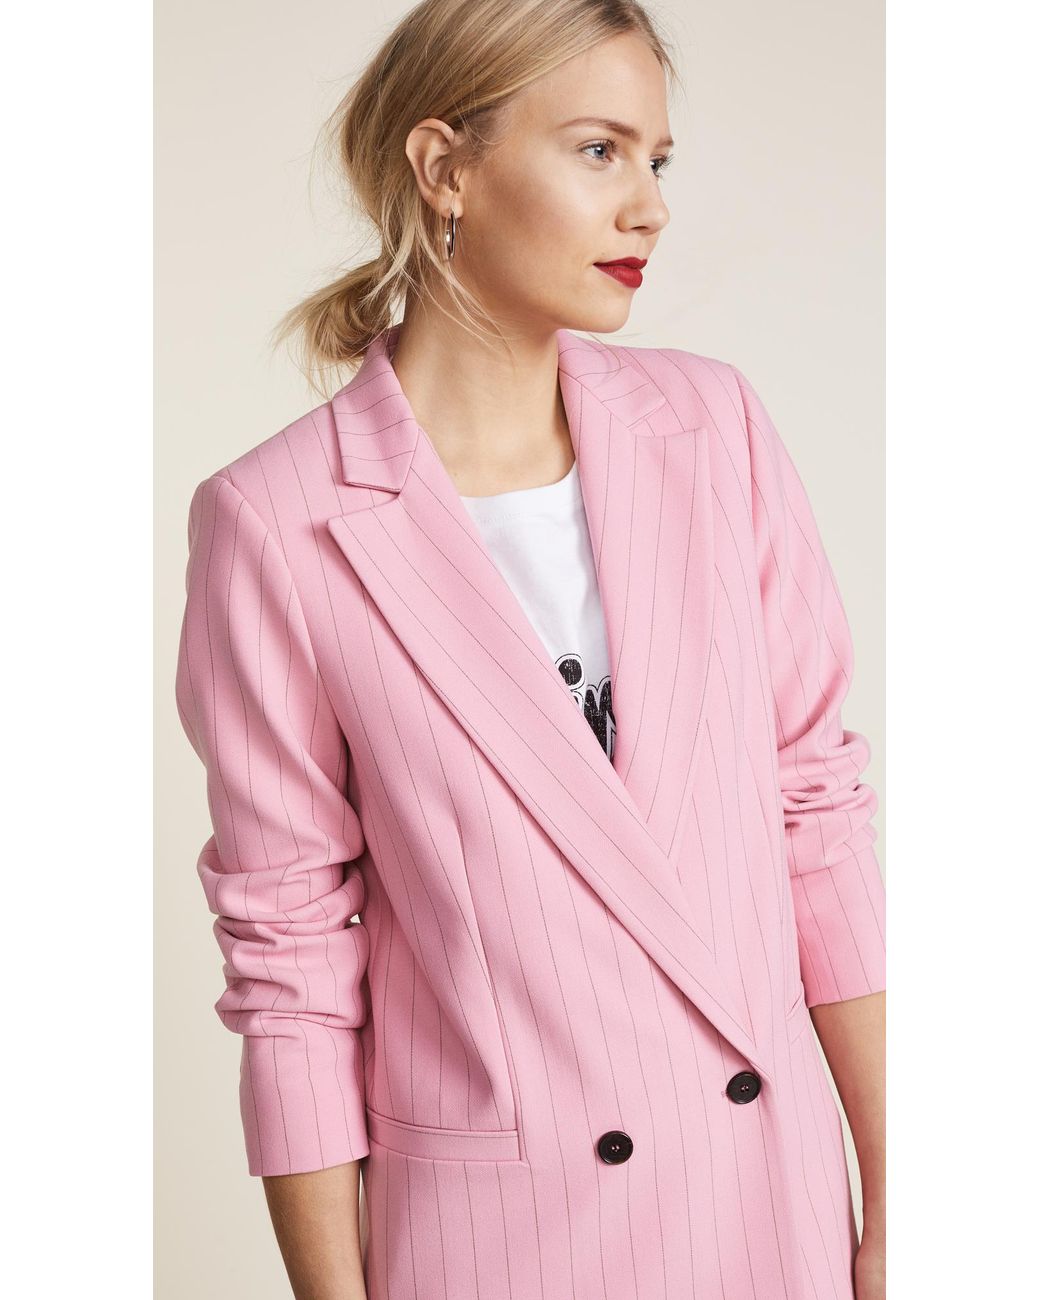 Ganni Brighton Blazer in Pink | Lyst Canada